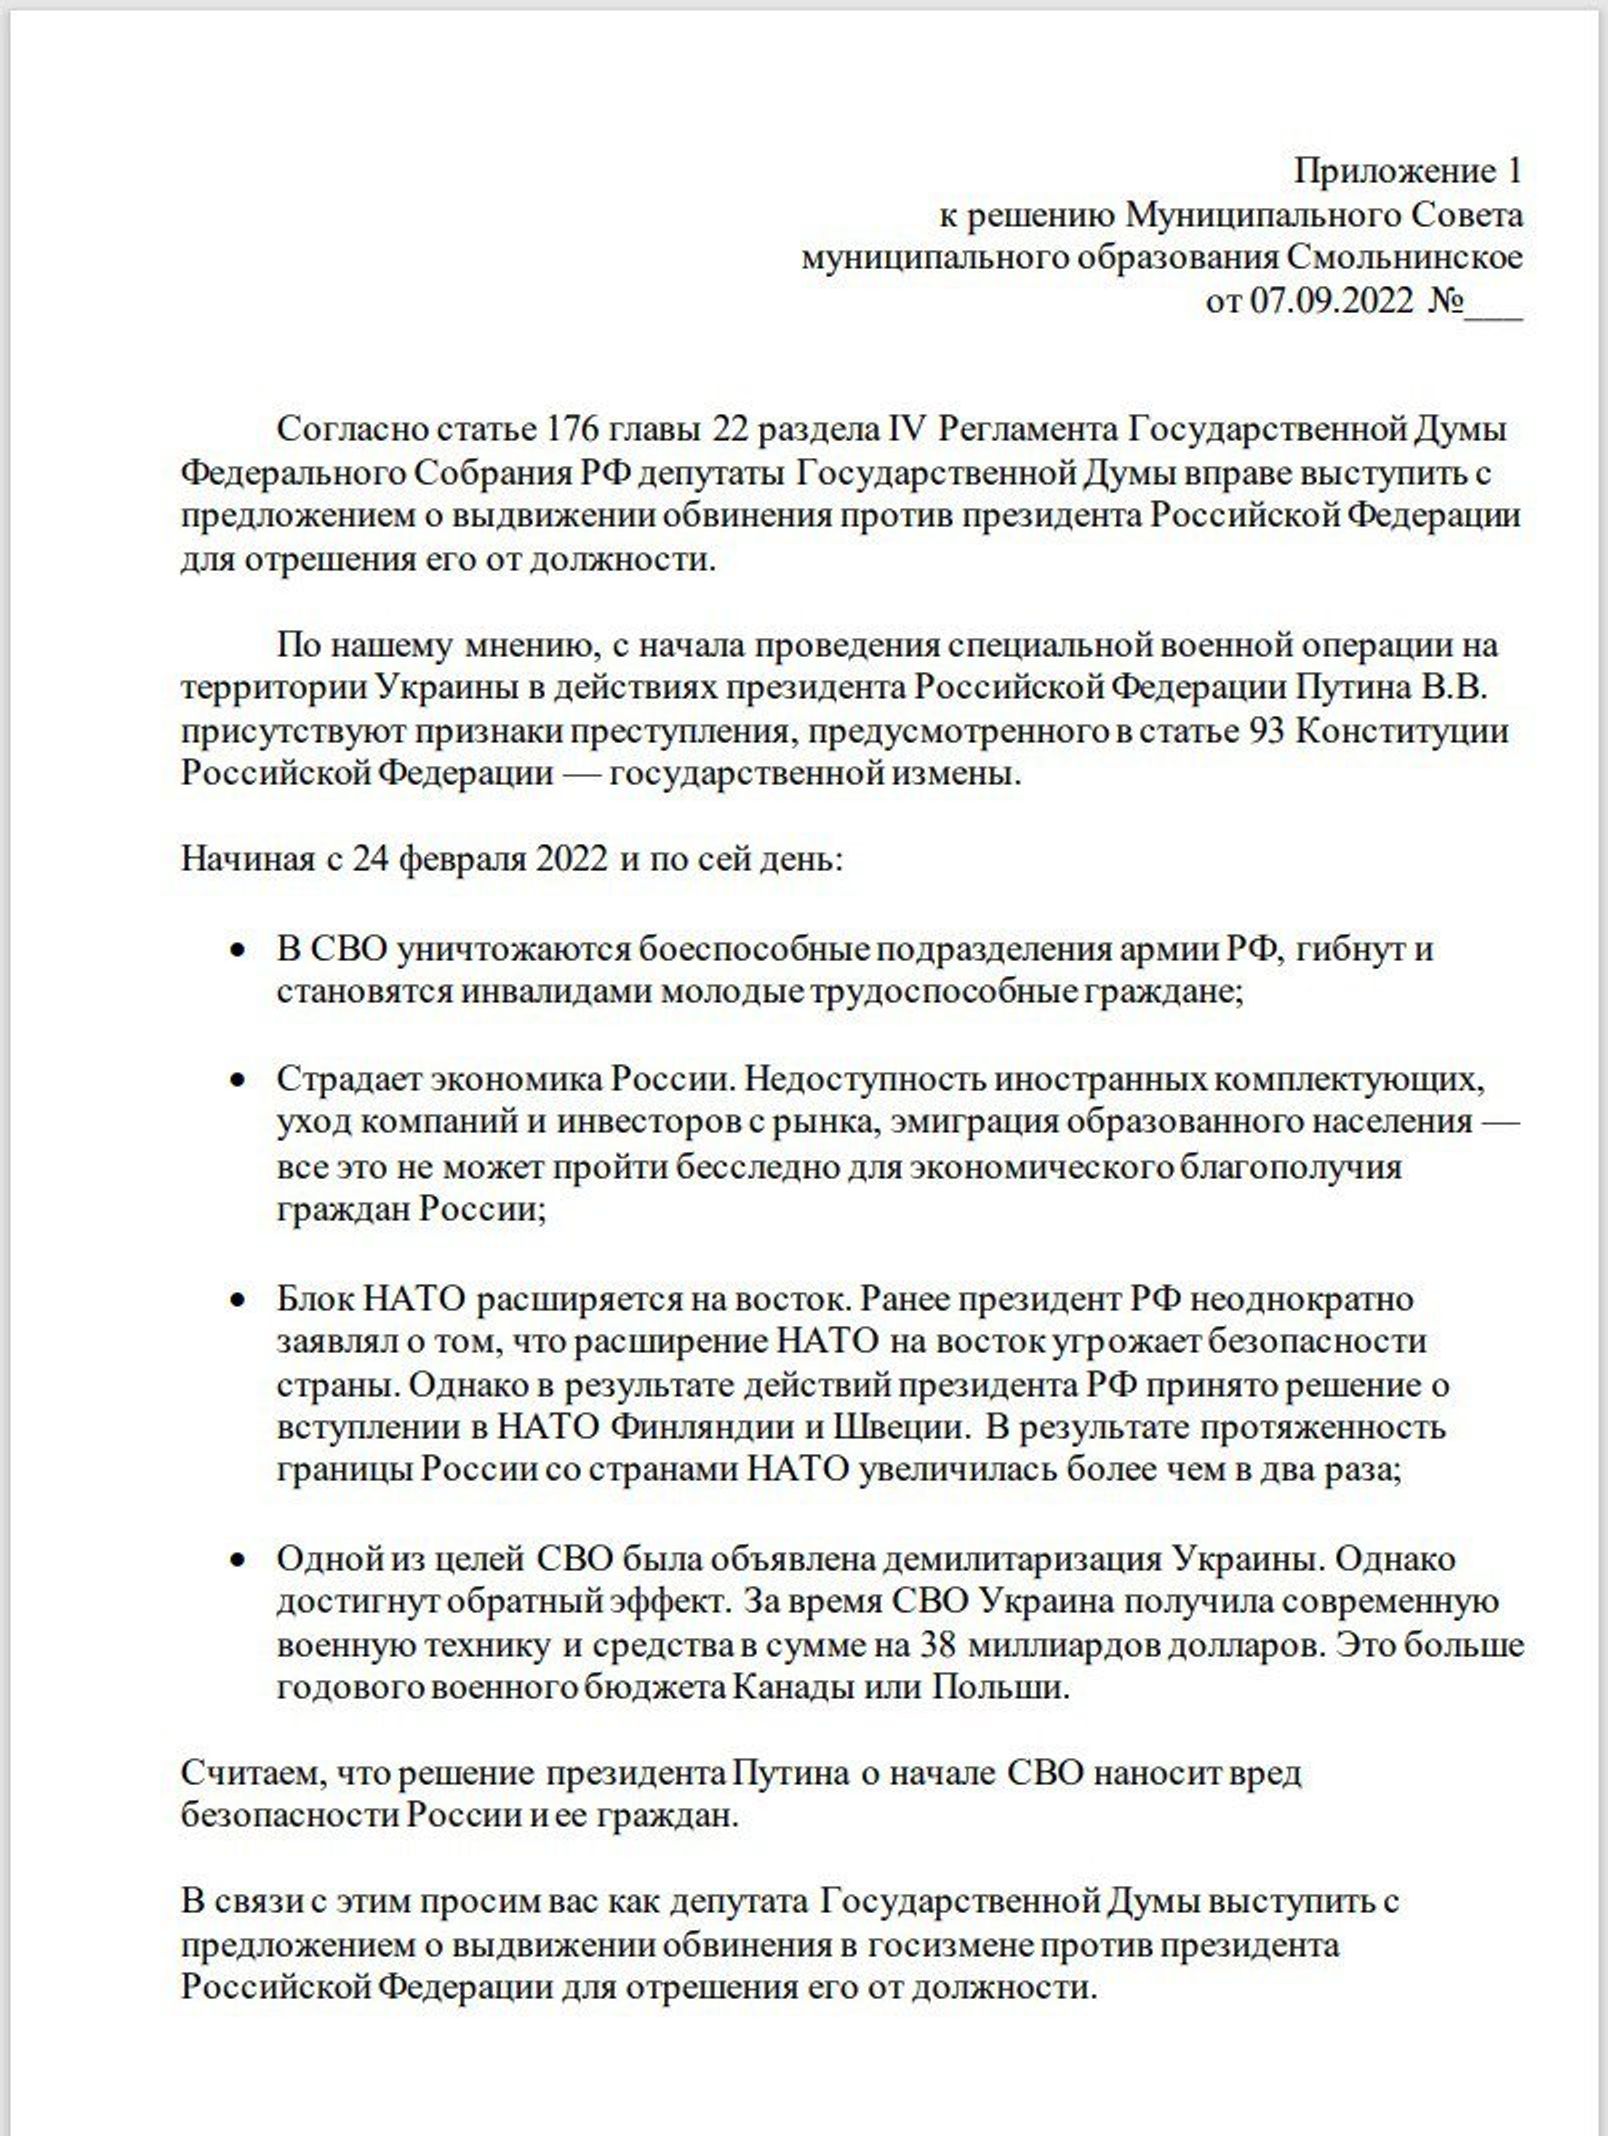 Петербургские депутаты решили предложить Госдуме обвинить Путина в госизмене